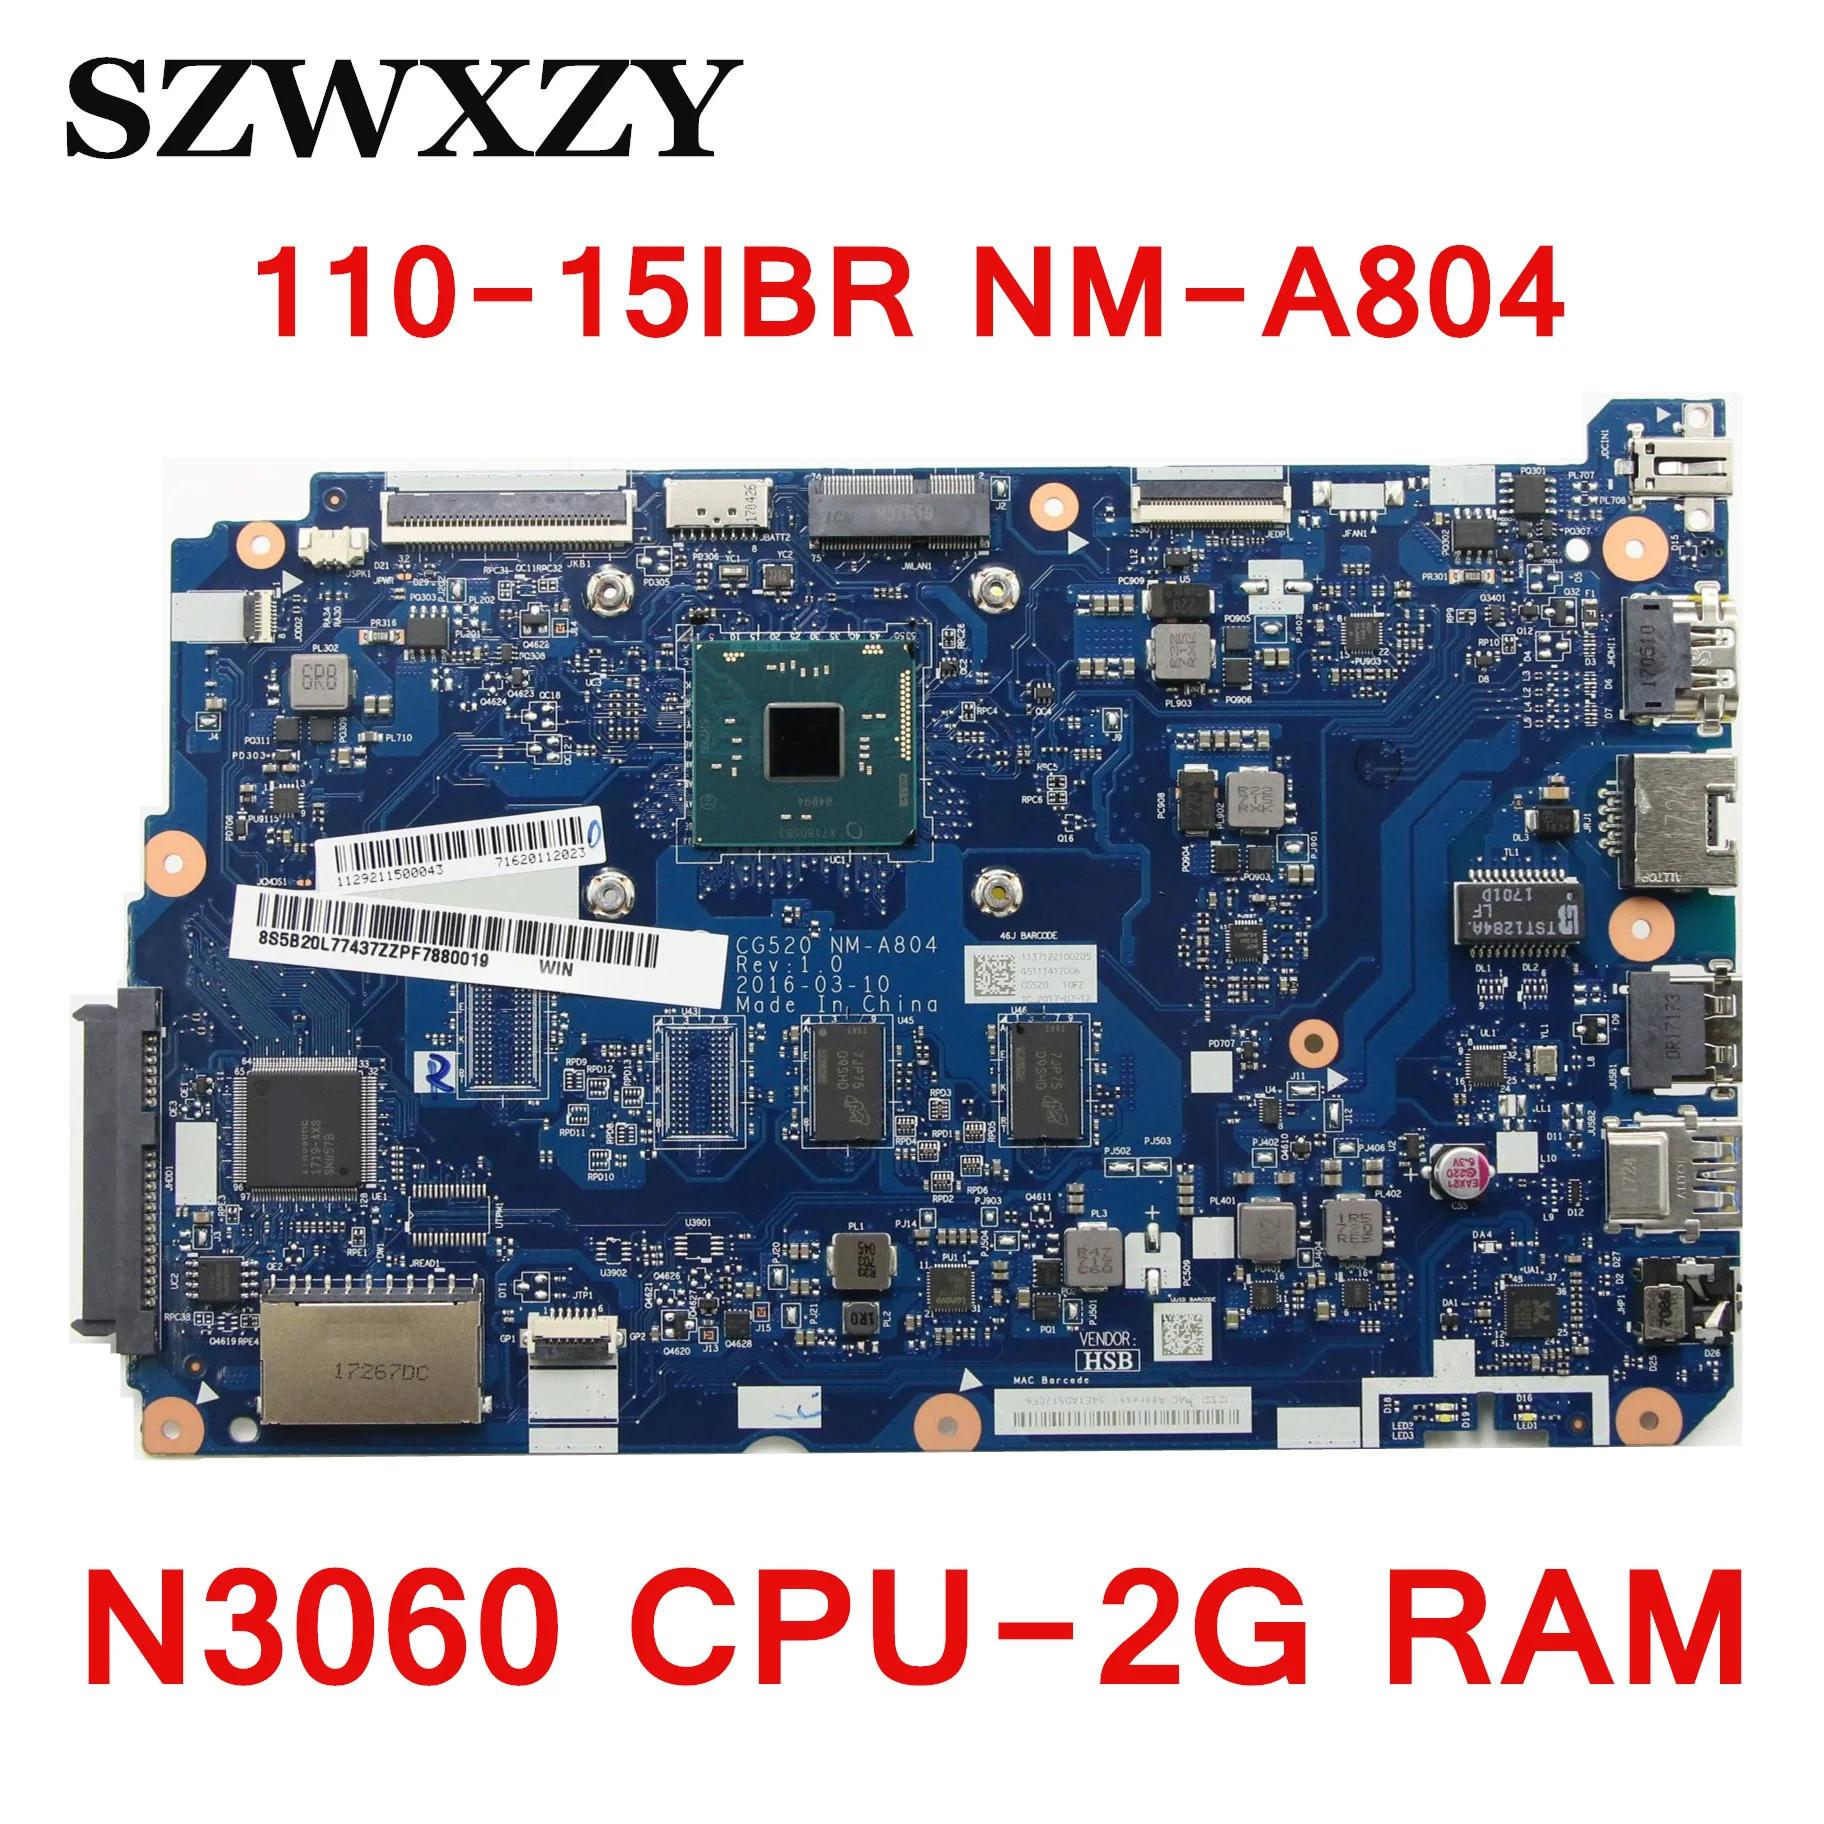  ƮϿ  ,  5B20L77437, N3060 CPU, 2G RAM, CG520 NM-A804, 110-15IBR